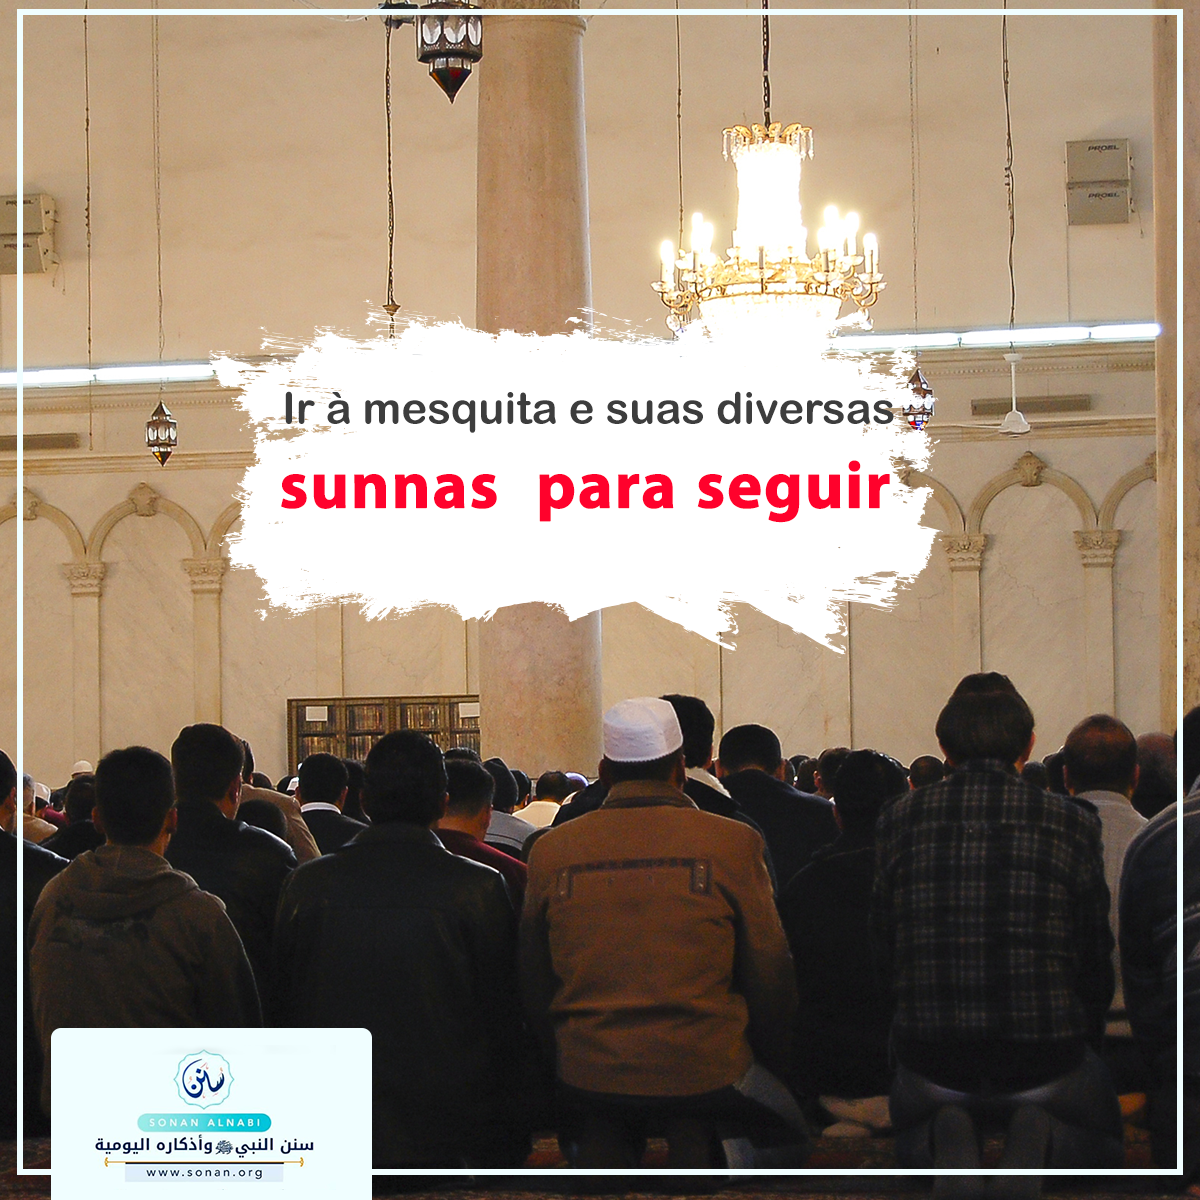 Ir à mesquita e suas diversas sunnas  para seguir: